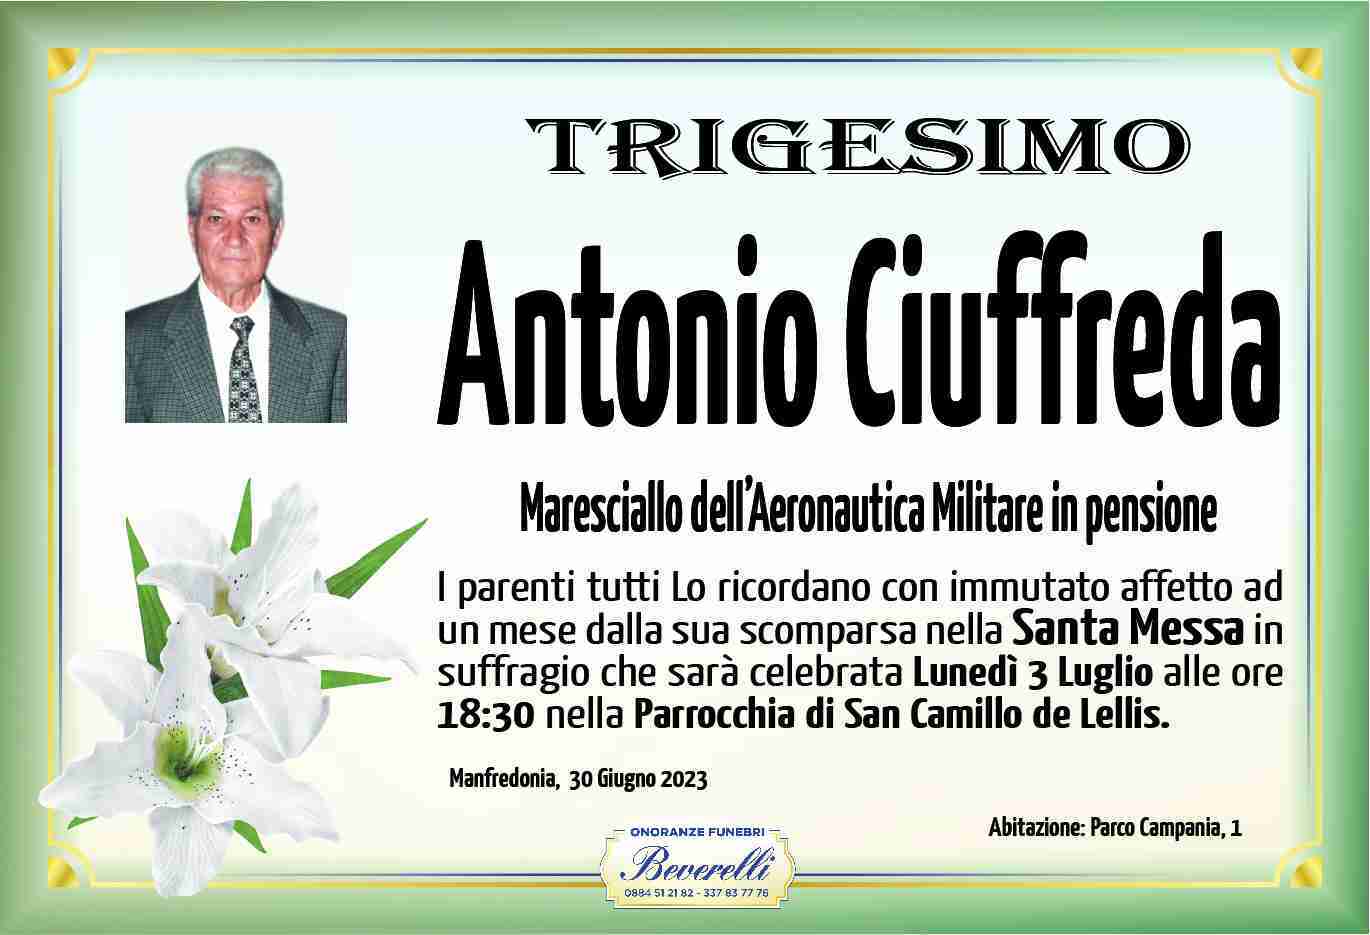 Antonio Ciuffreda